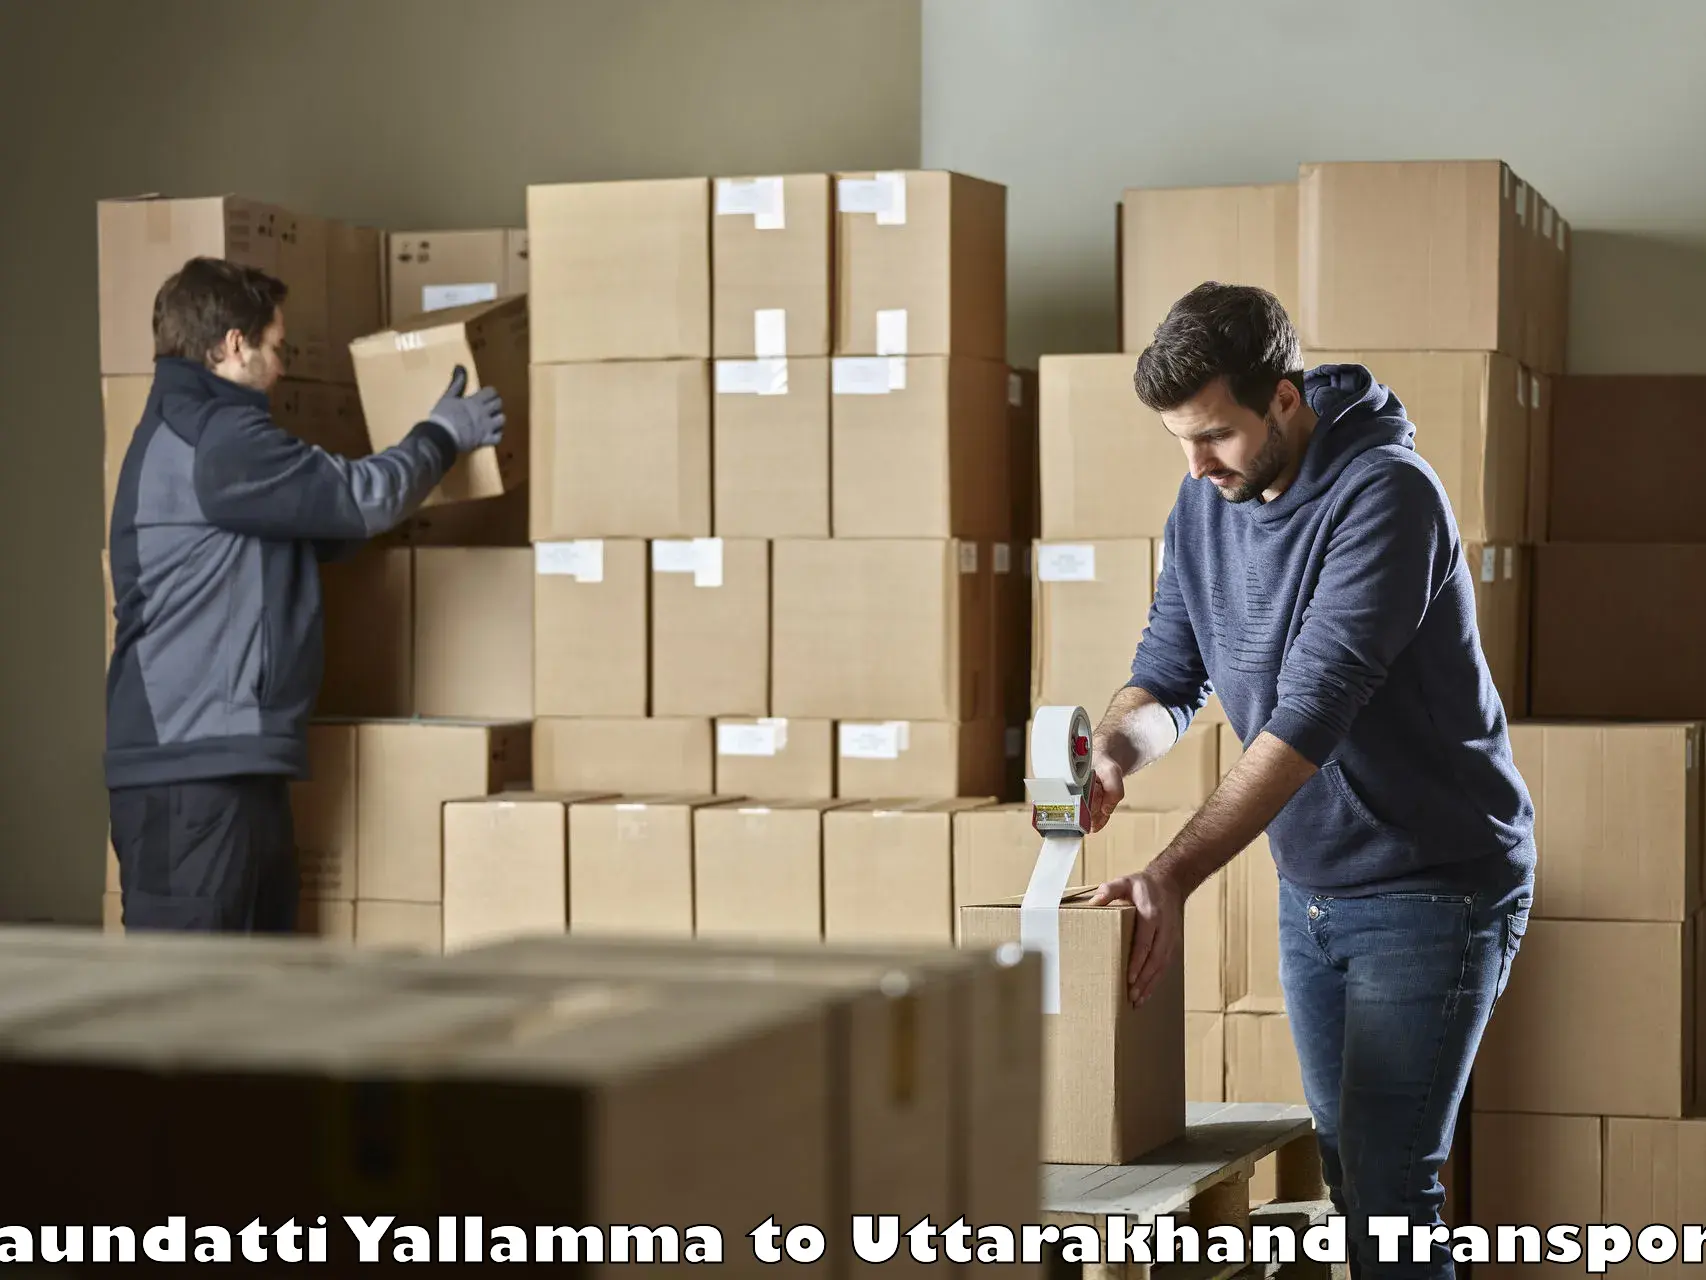 Air freight transport services Saundatti Yallamma to IIT Roorkee